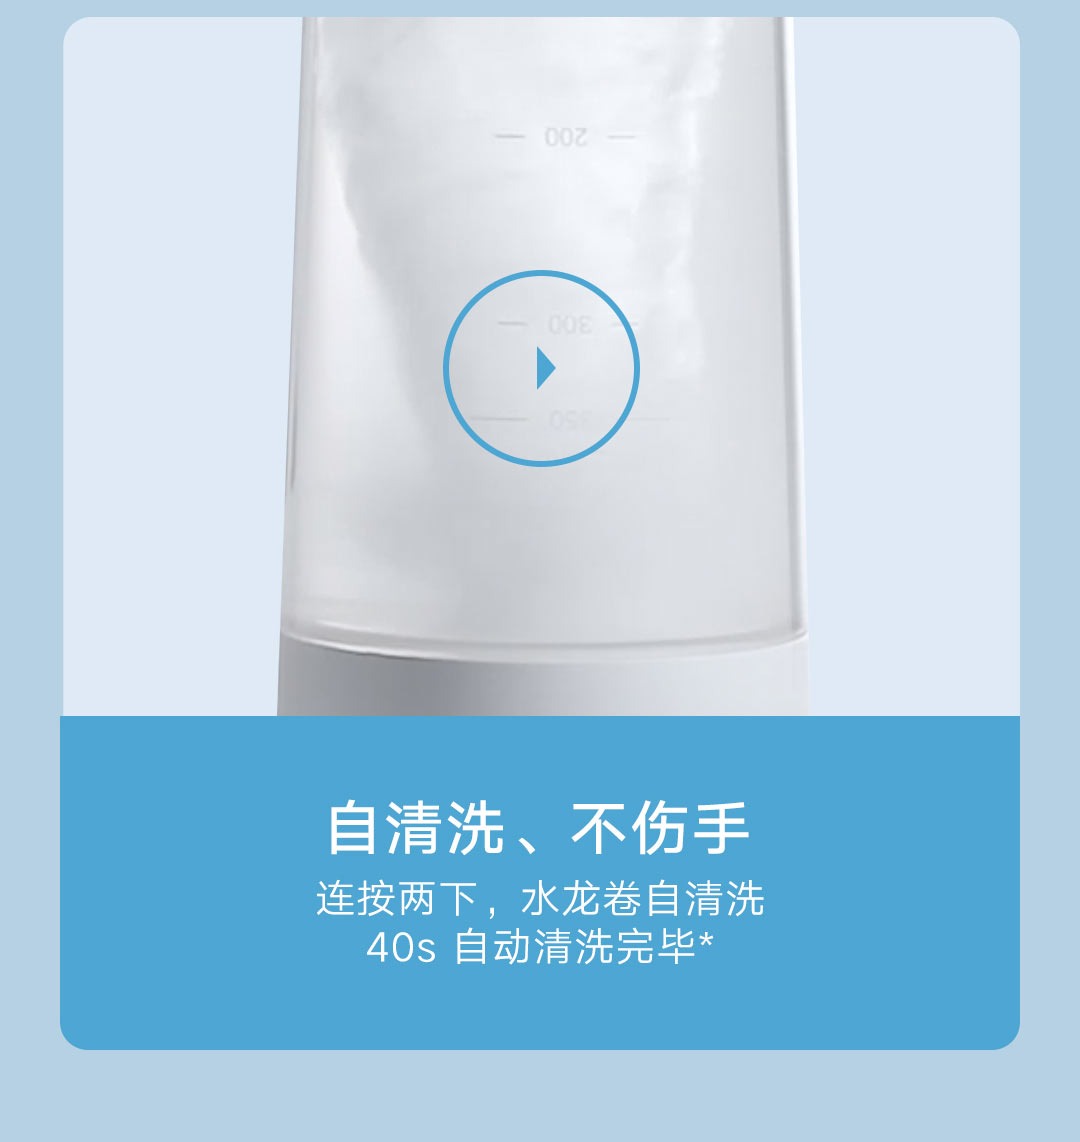 product_奇妙_米家便携榨汁机